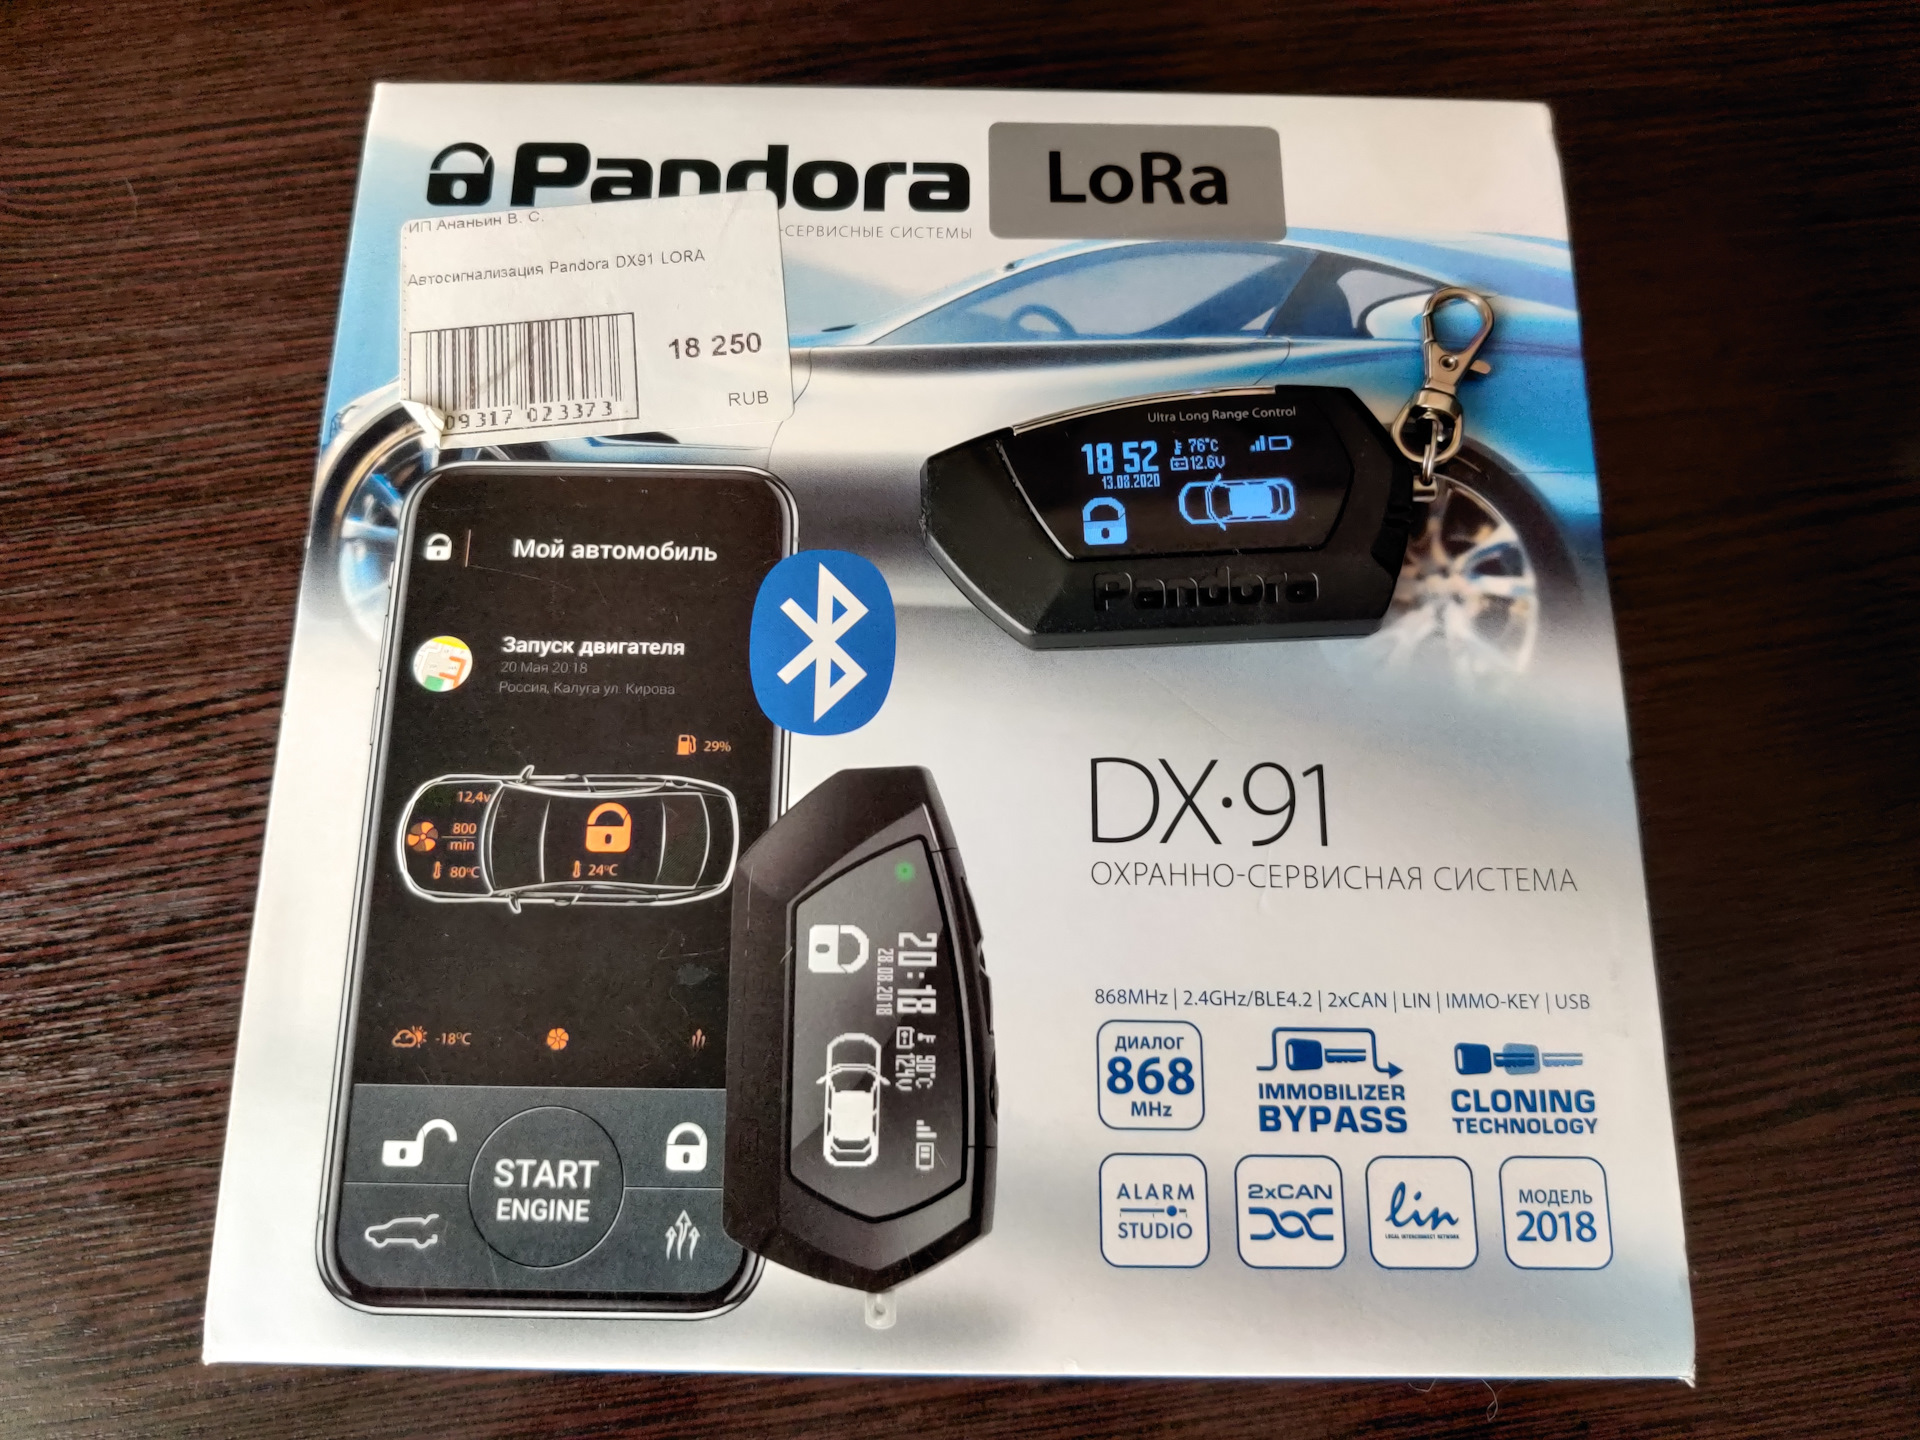 Defender pandora. Сигнализация Пандора с автозапуском DX 90. Пандора сигнализация с автозапуском DX 4. Pandora DX 91. Сигнализация Пандора DX 40 RS.